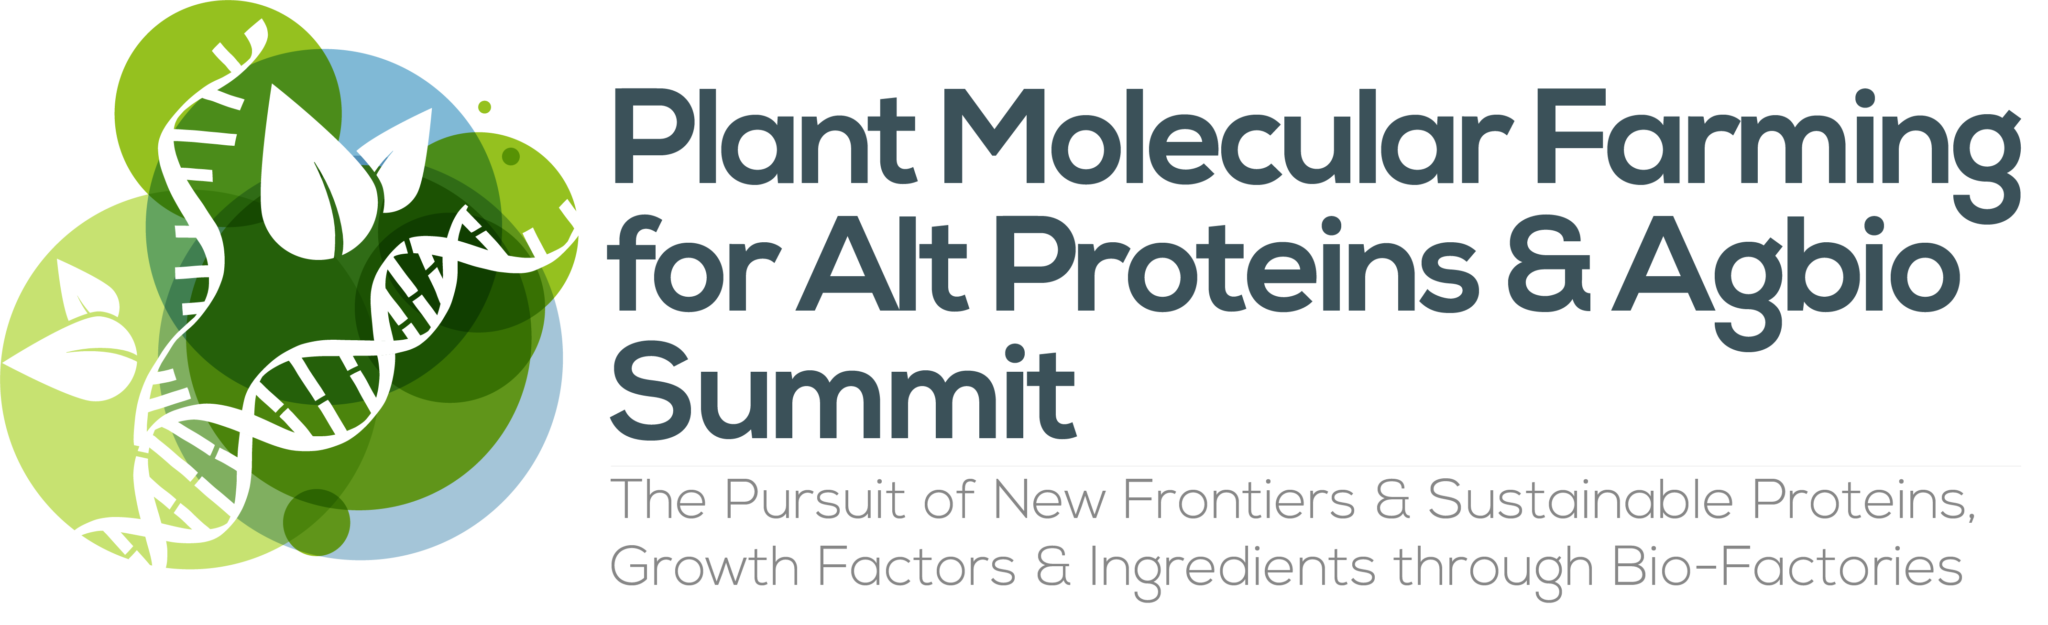 HW240117-50028-Plant-Molecular-Farming-for-AltProteins-Cellular-Agbio-Summit-logo-FINAL-1-2048x625 (1)